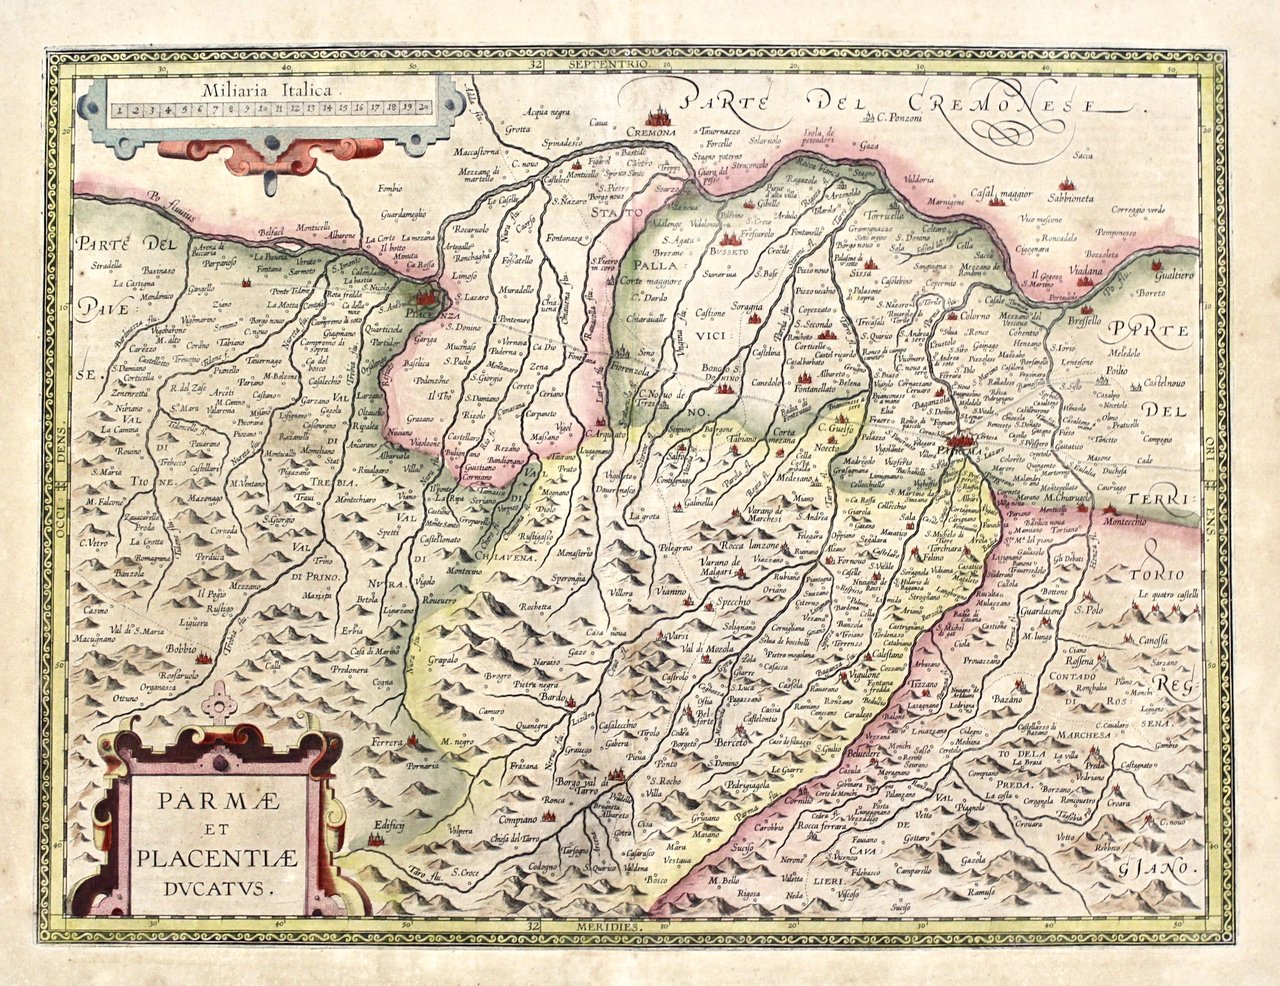 Parmae et Placentiae Ducatus